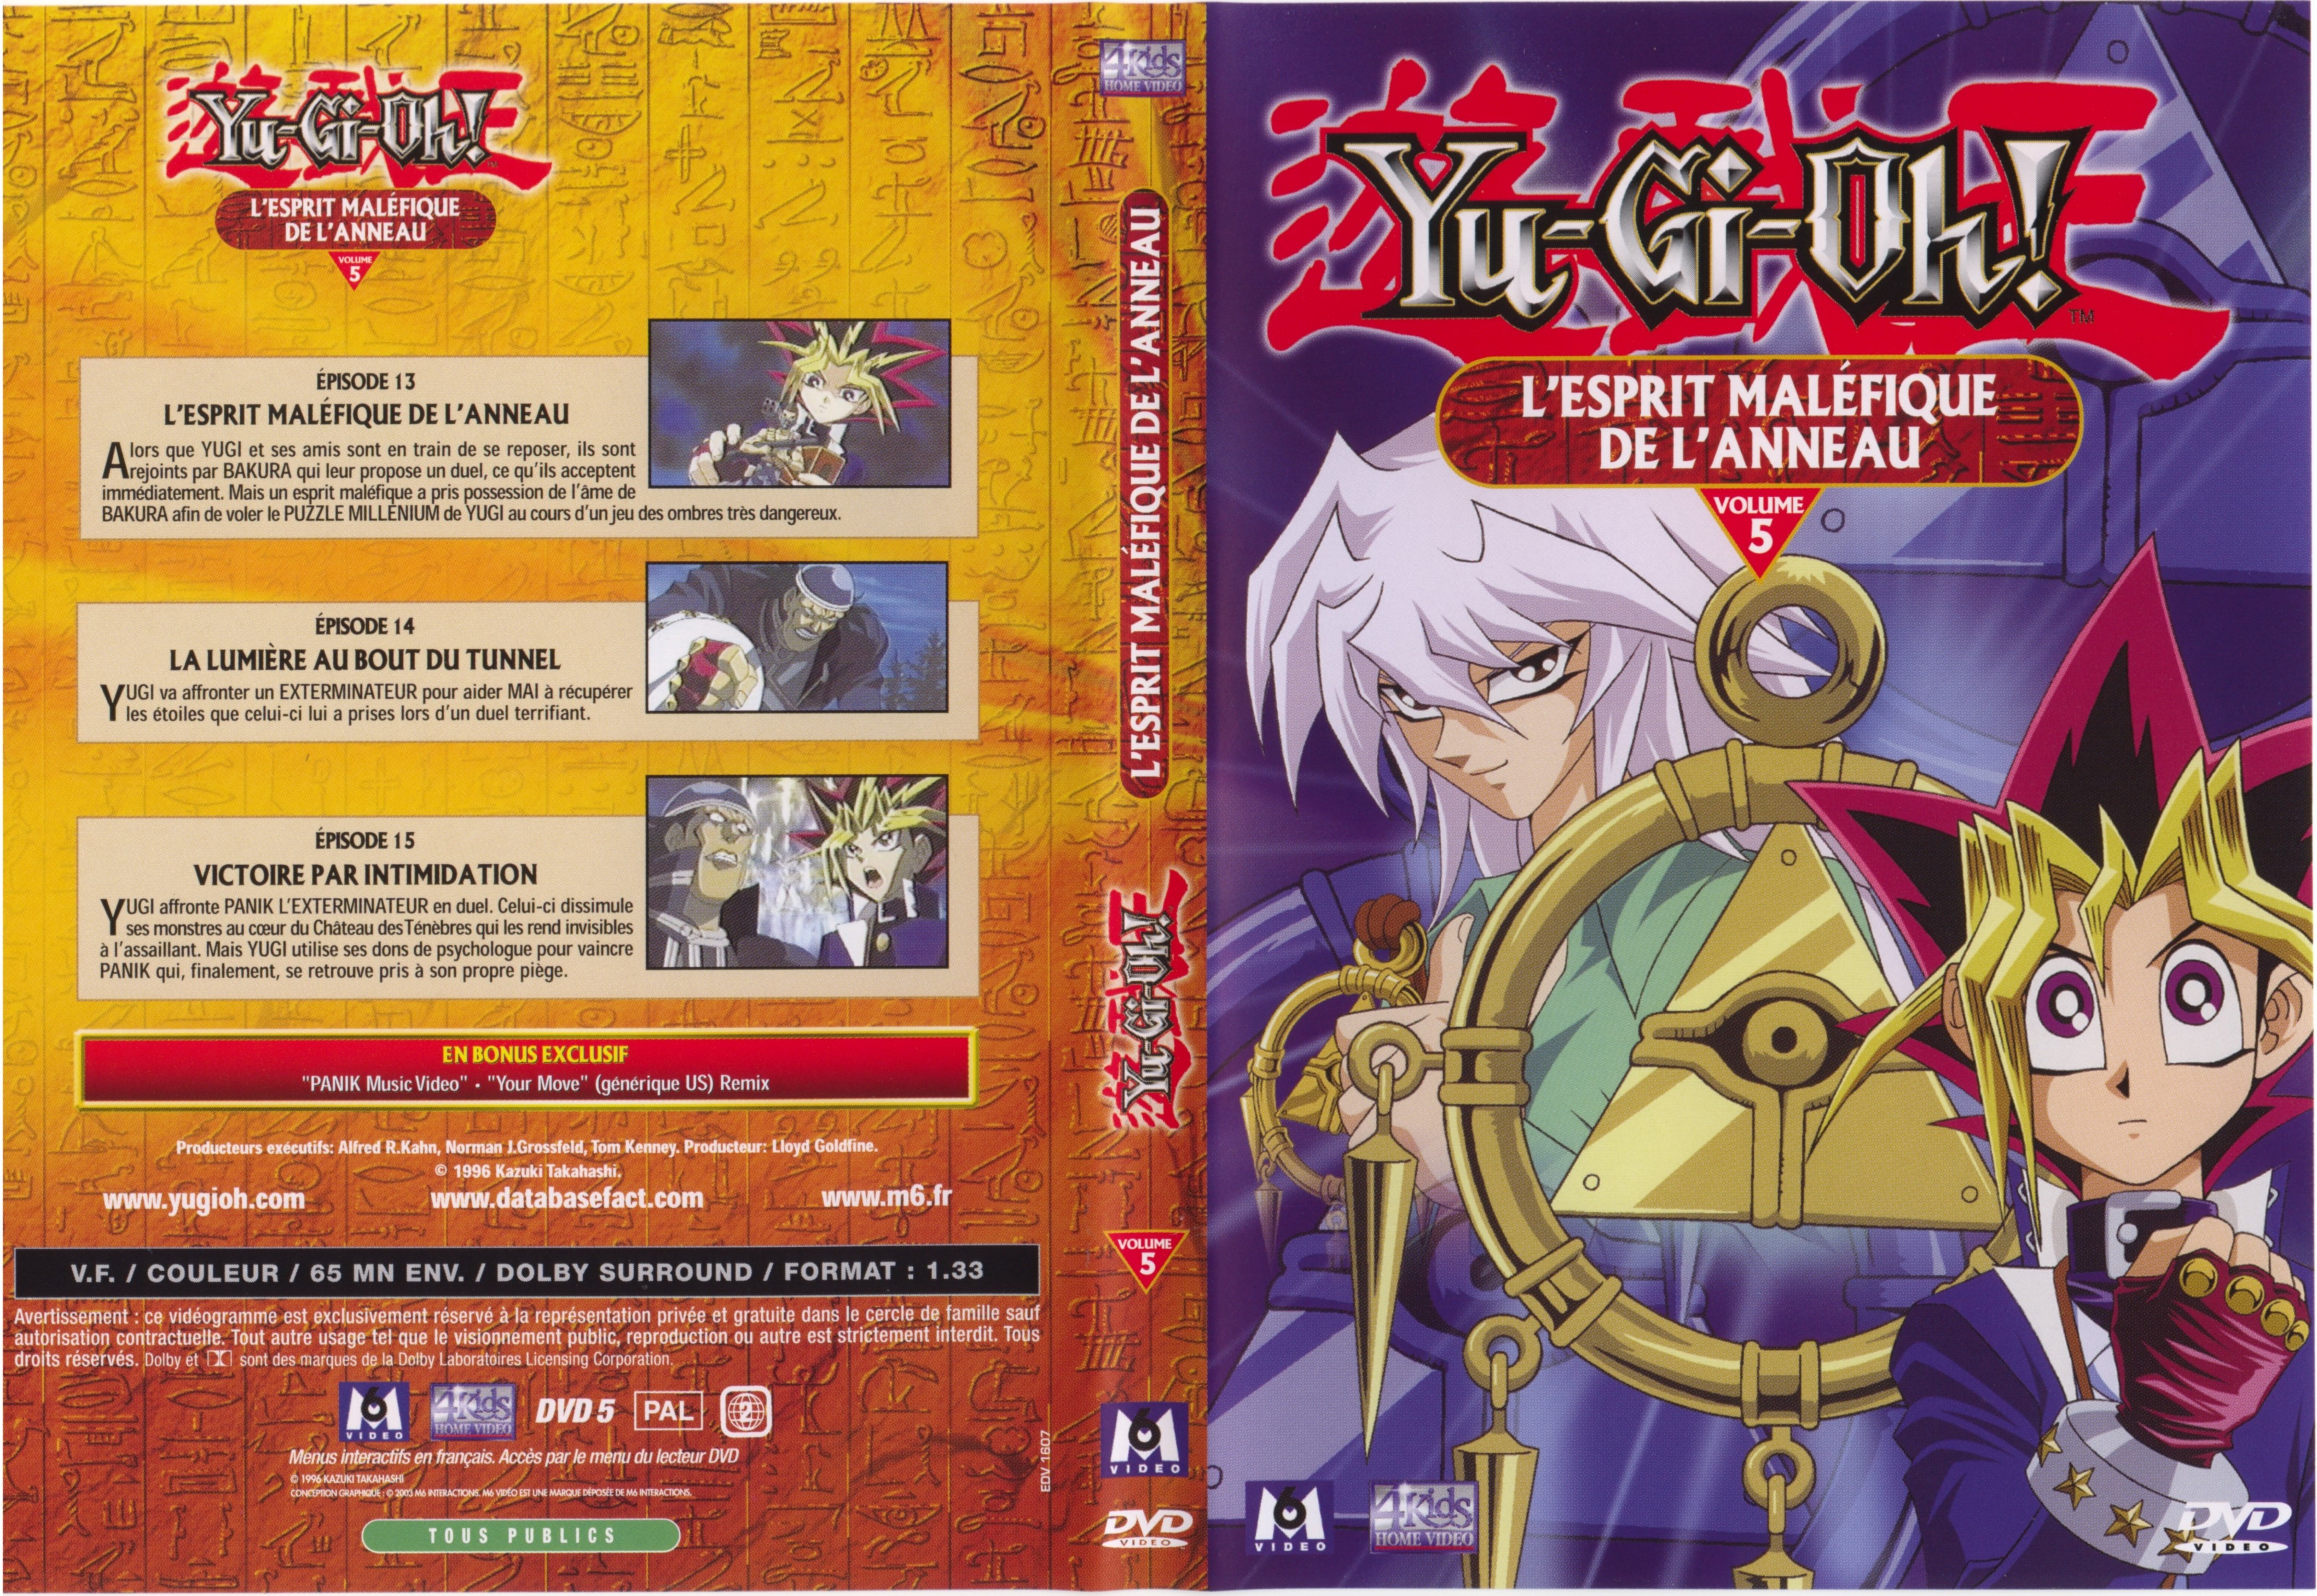 Jaquette DVD Yu-gi-oh! vol 05